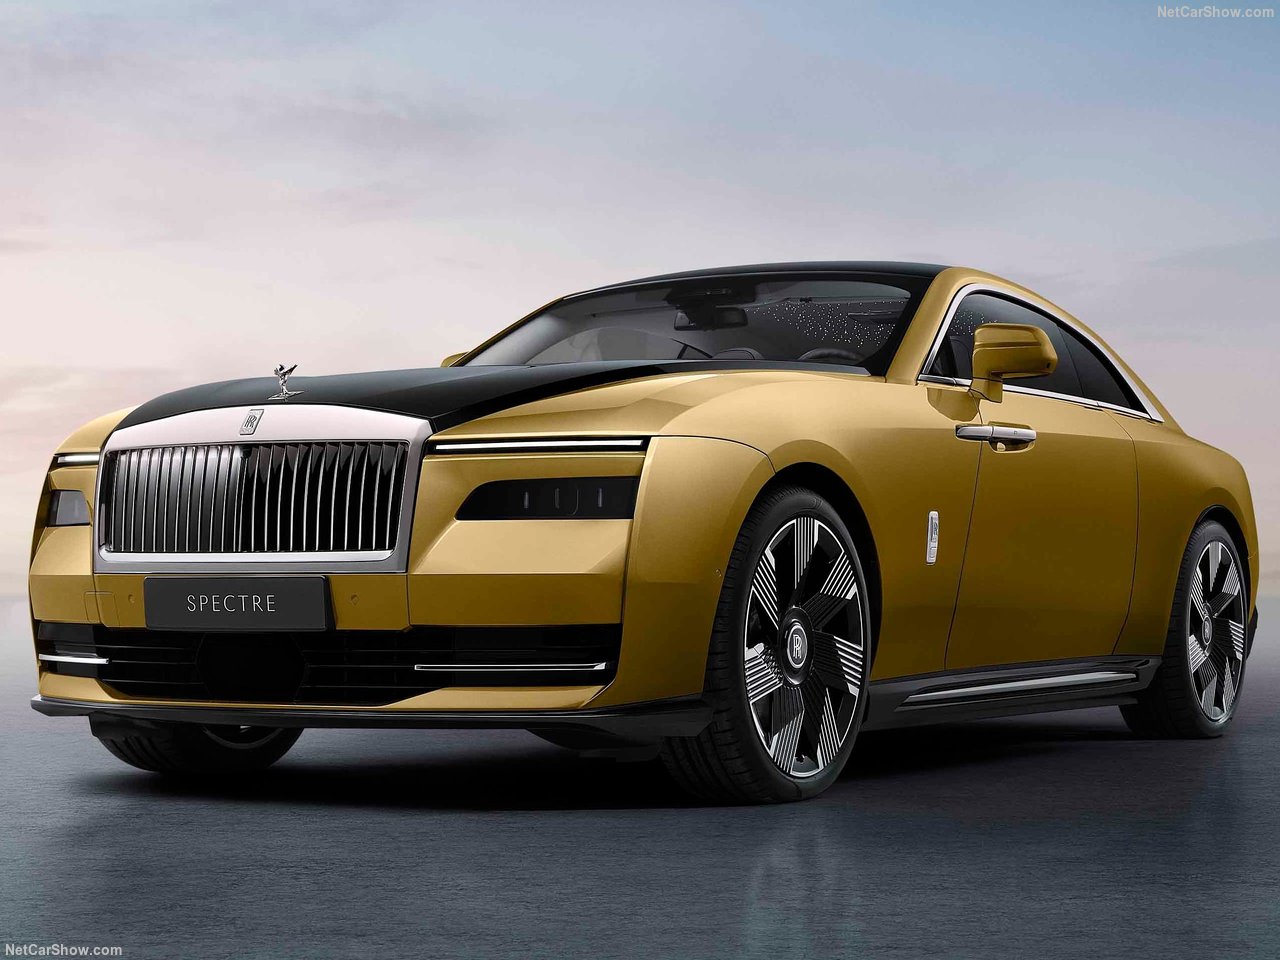 純電世代降臨 Rolls-Royce首輛純電產品Spectre正式登場